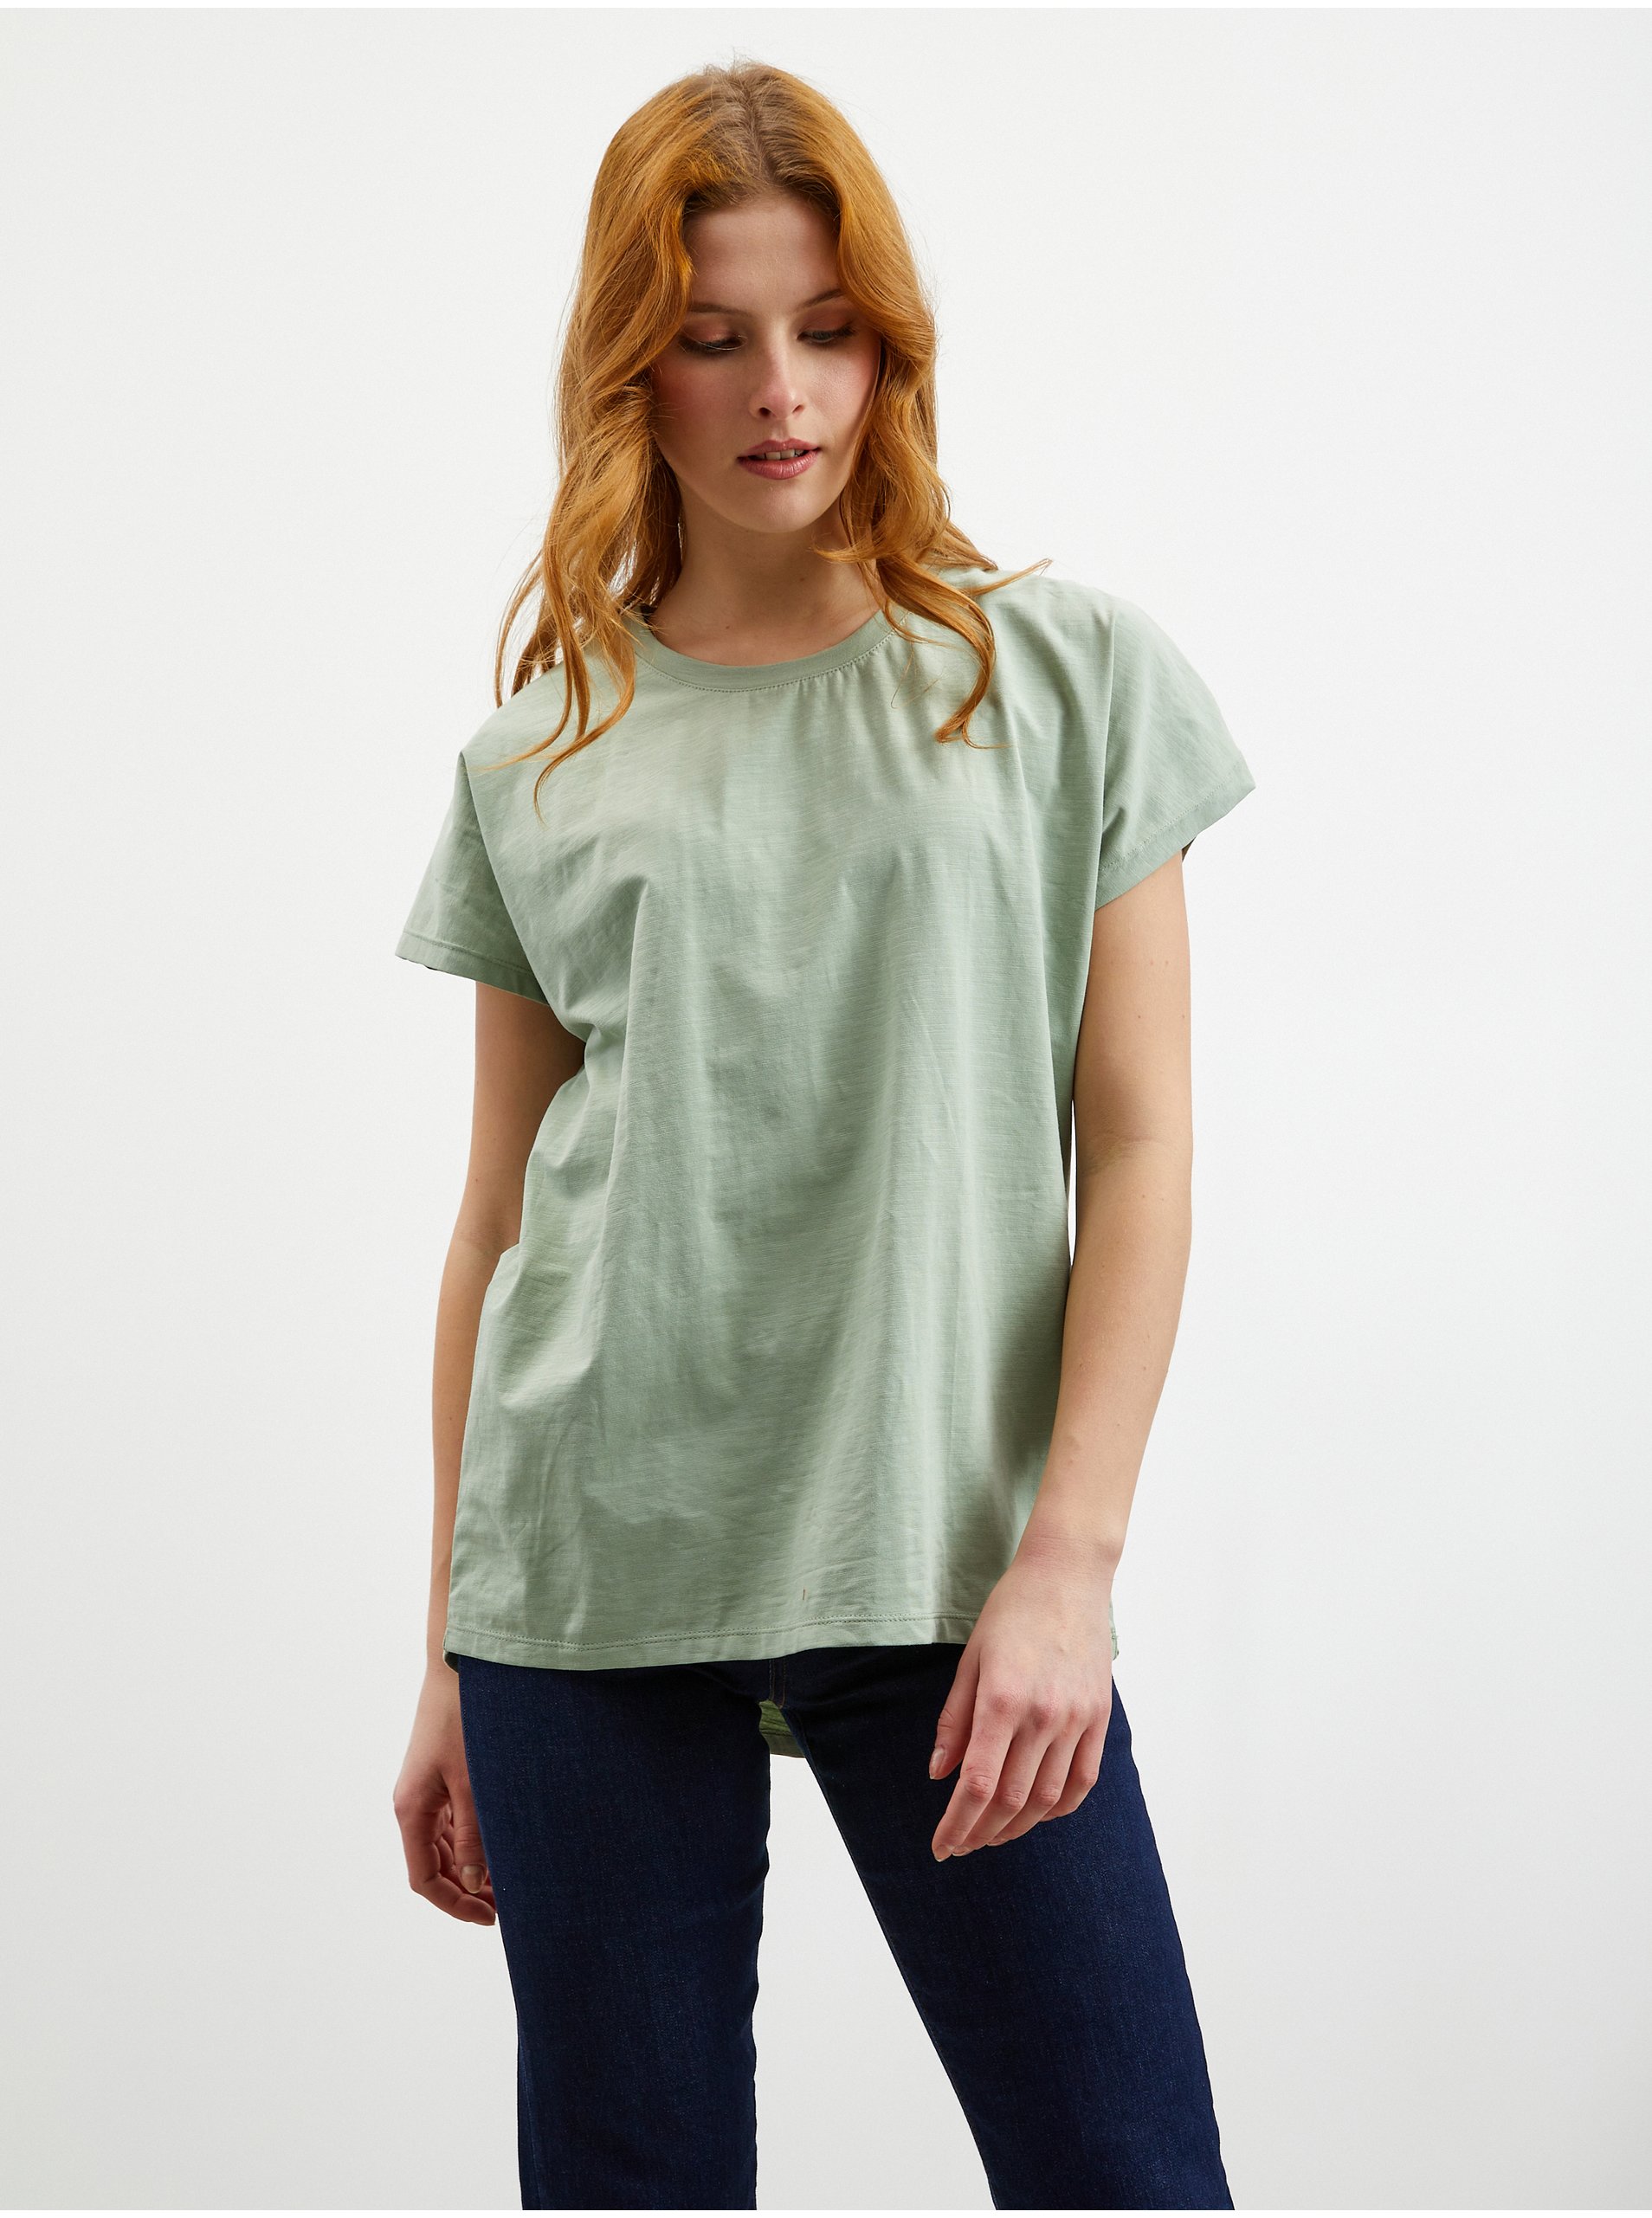 Lacno Topy a tričká pre ženy ZOOT Baseline - svetlozelená